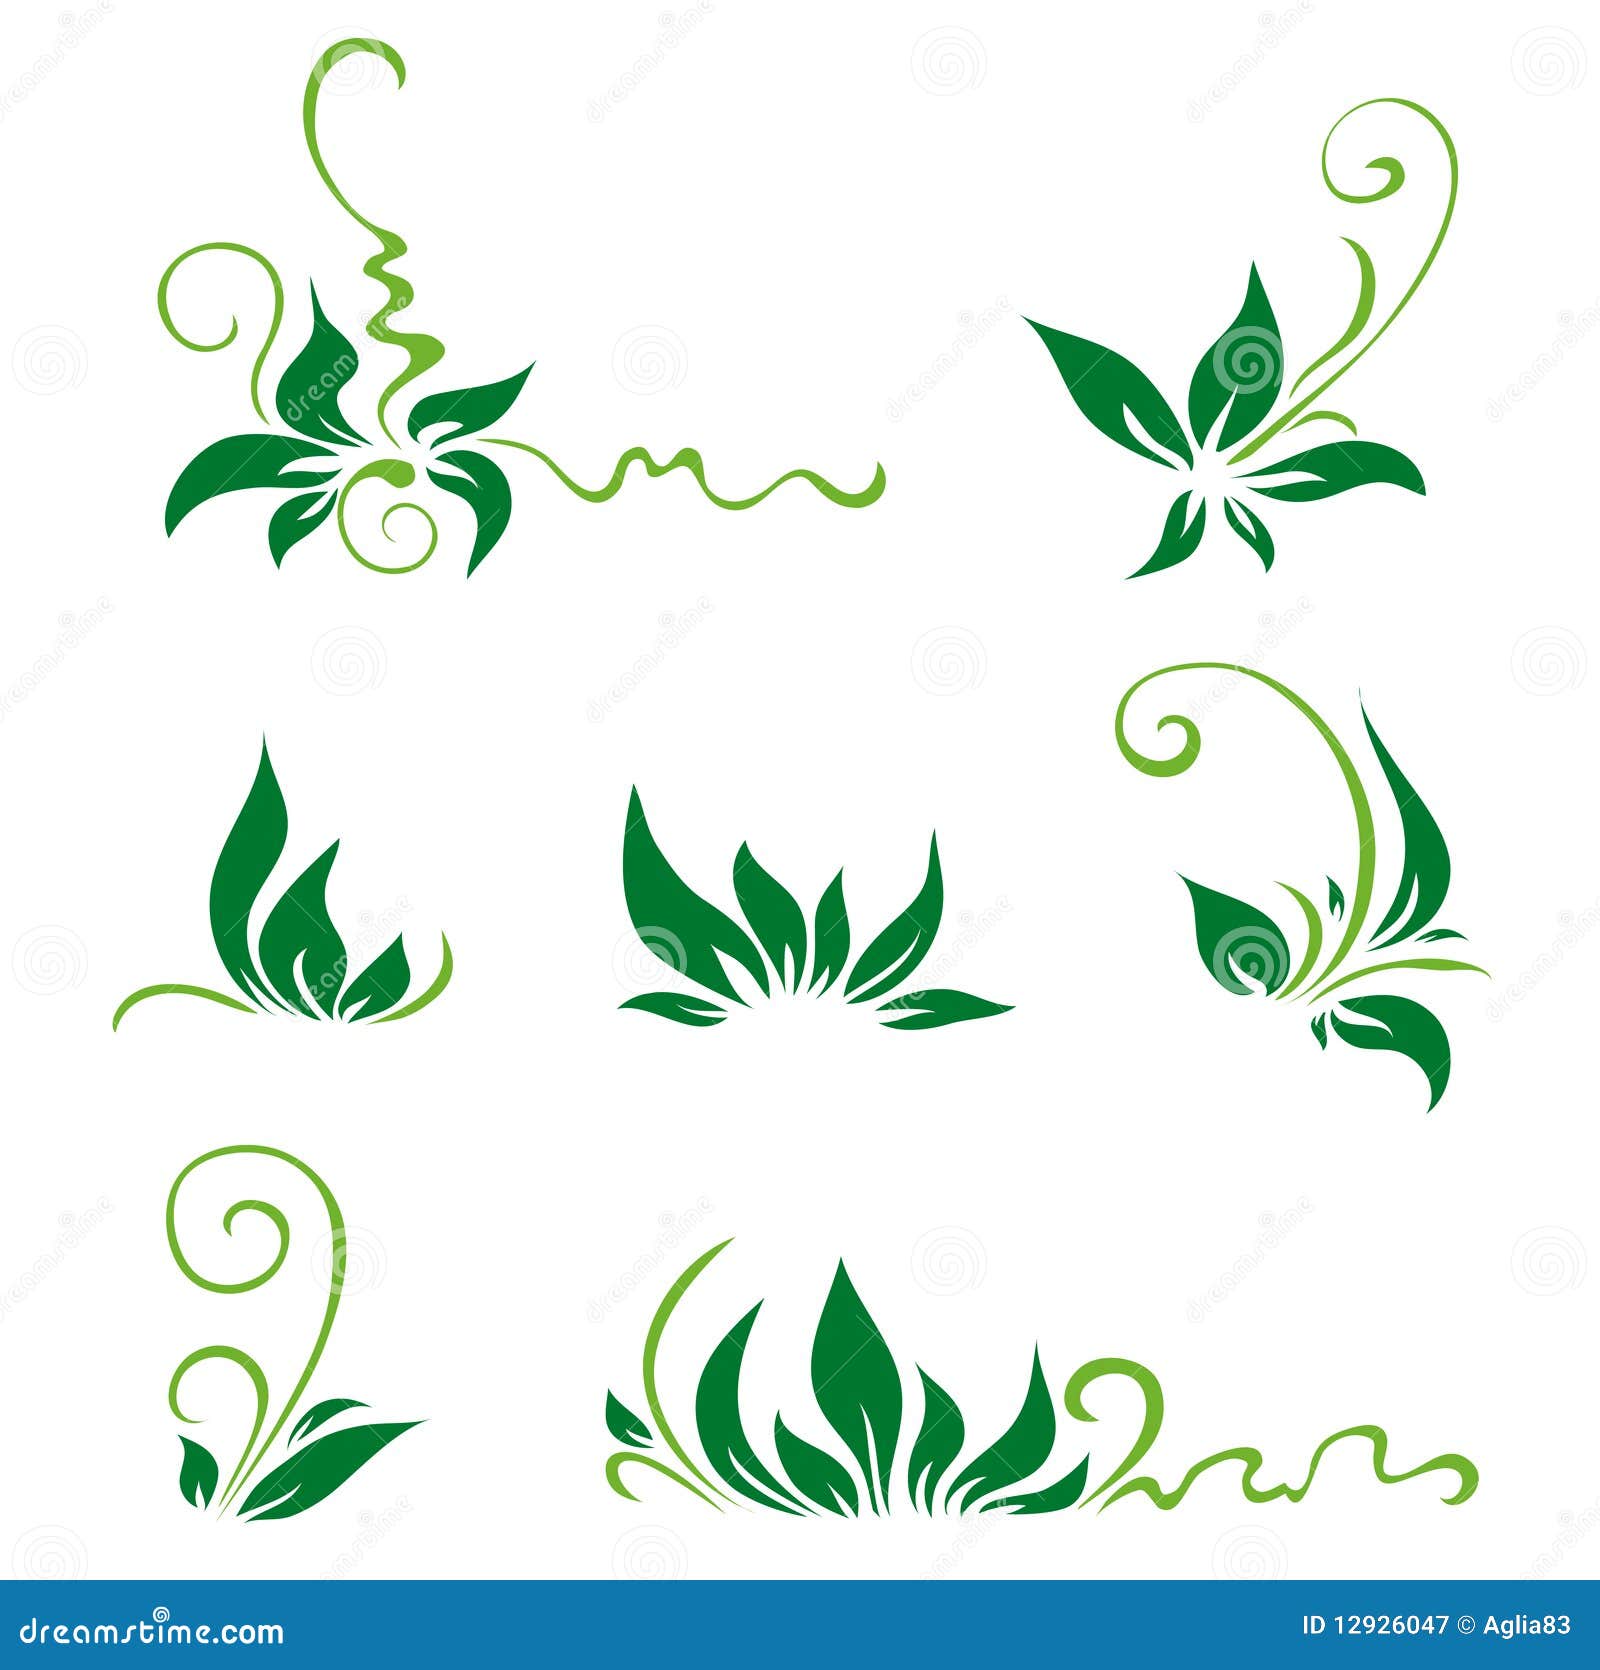 Decoraciones De Hojas - 22 best decoraciones para hojas images on Pinterest ... - Imprimir hojas ...